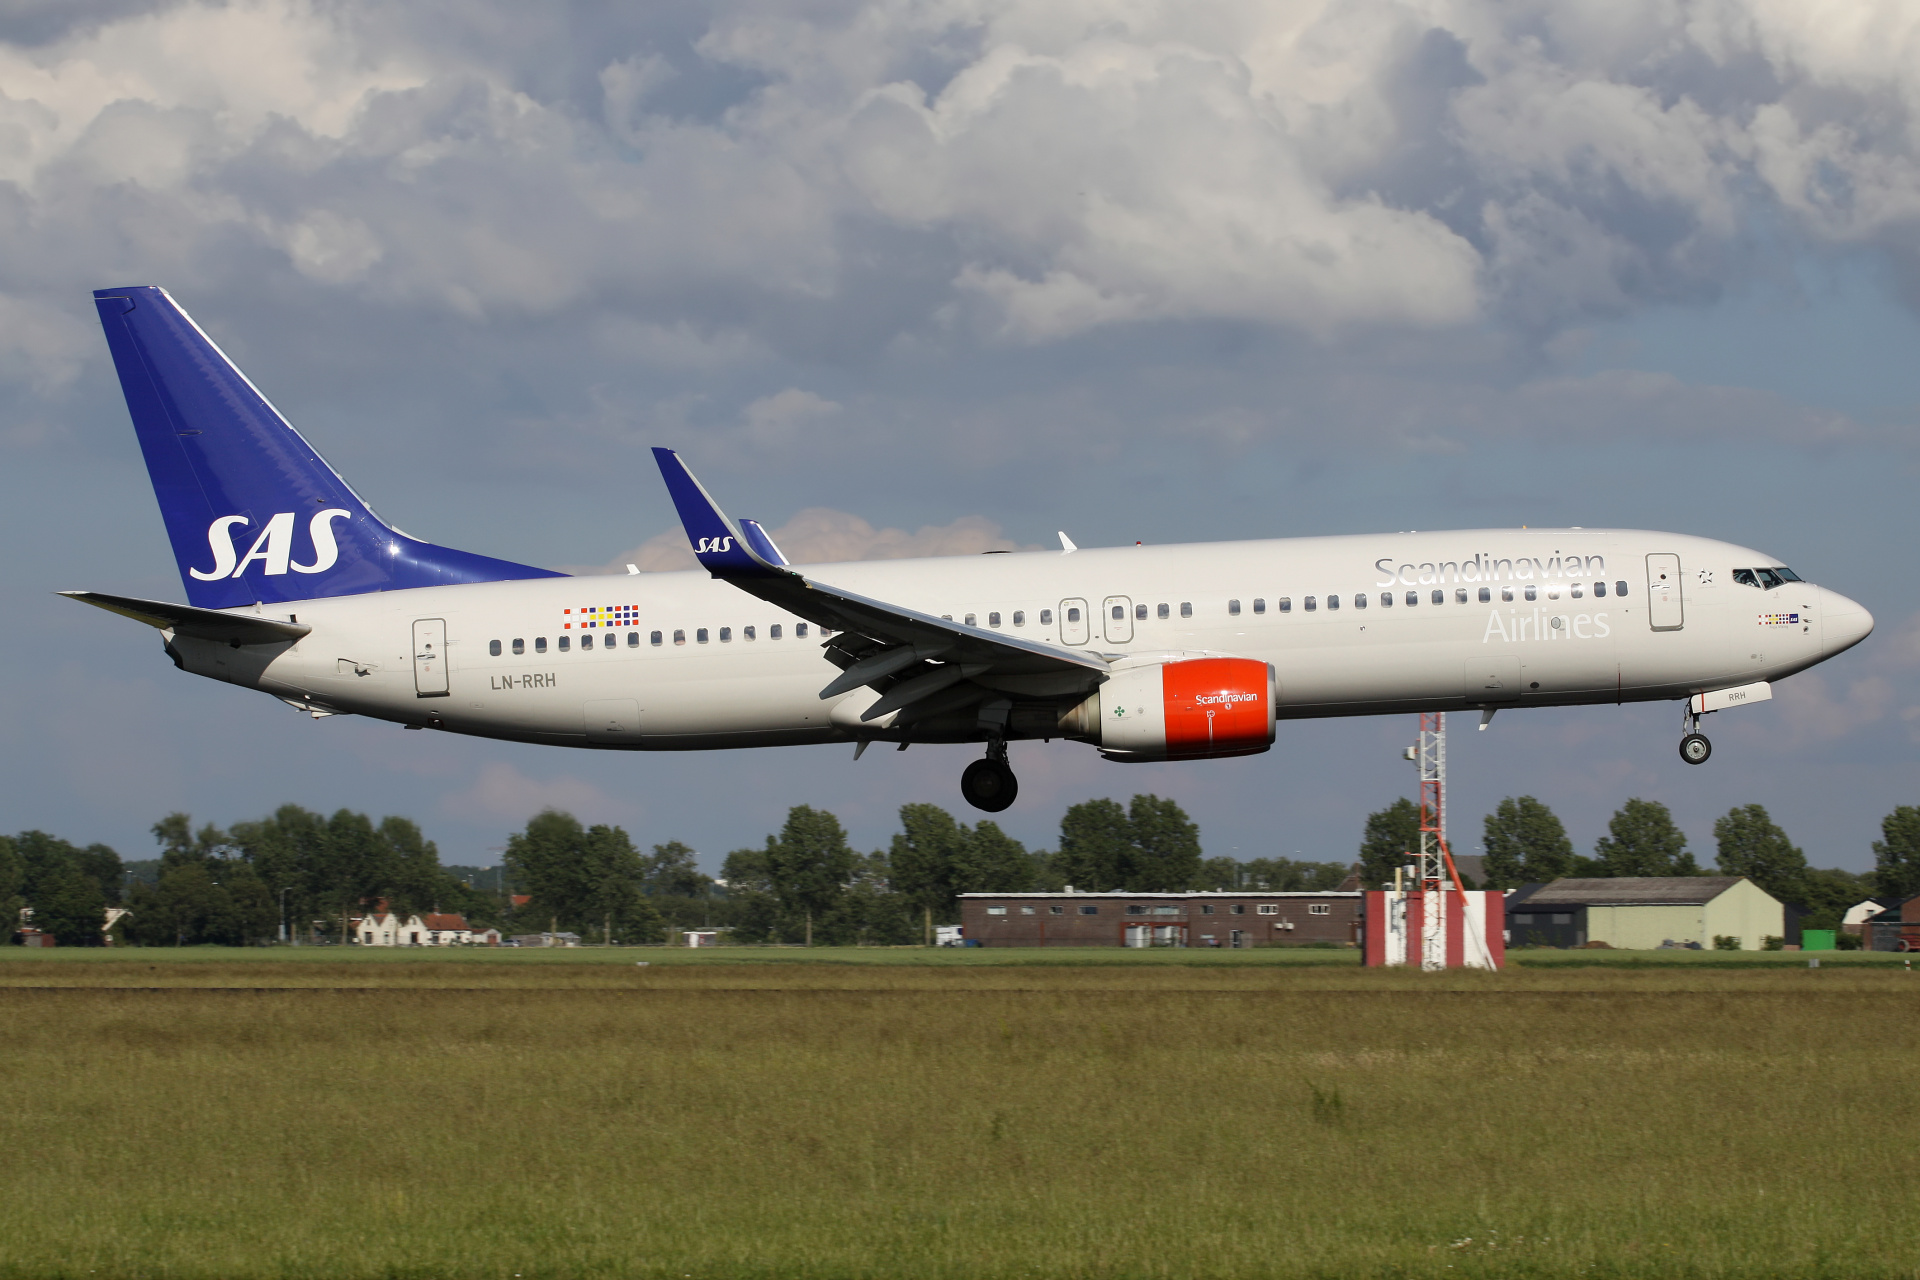 LN-RRH, SAS Scandinavian Airlines (Aircraft » Schiphol Spotting » Boeing 737-800)